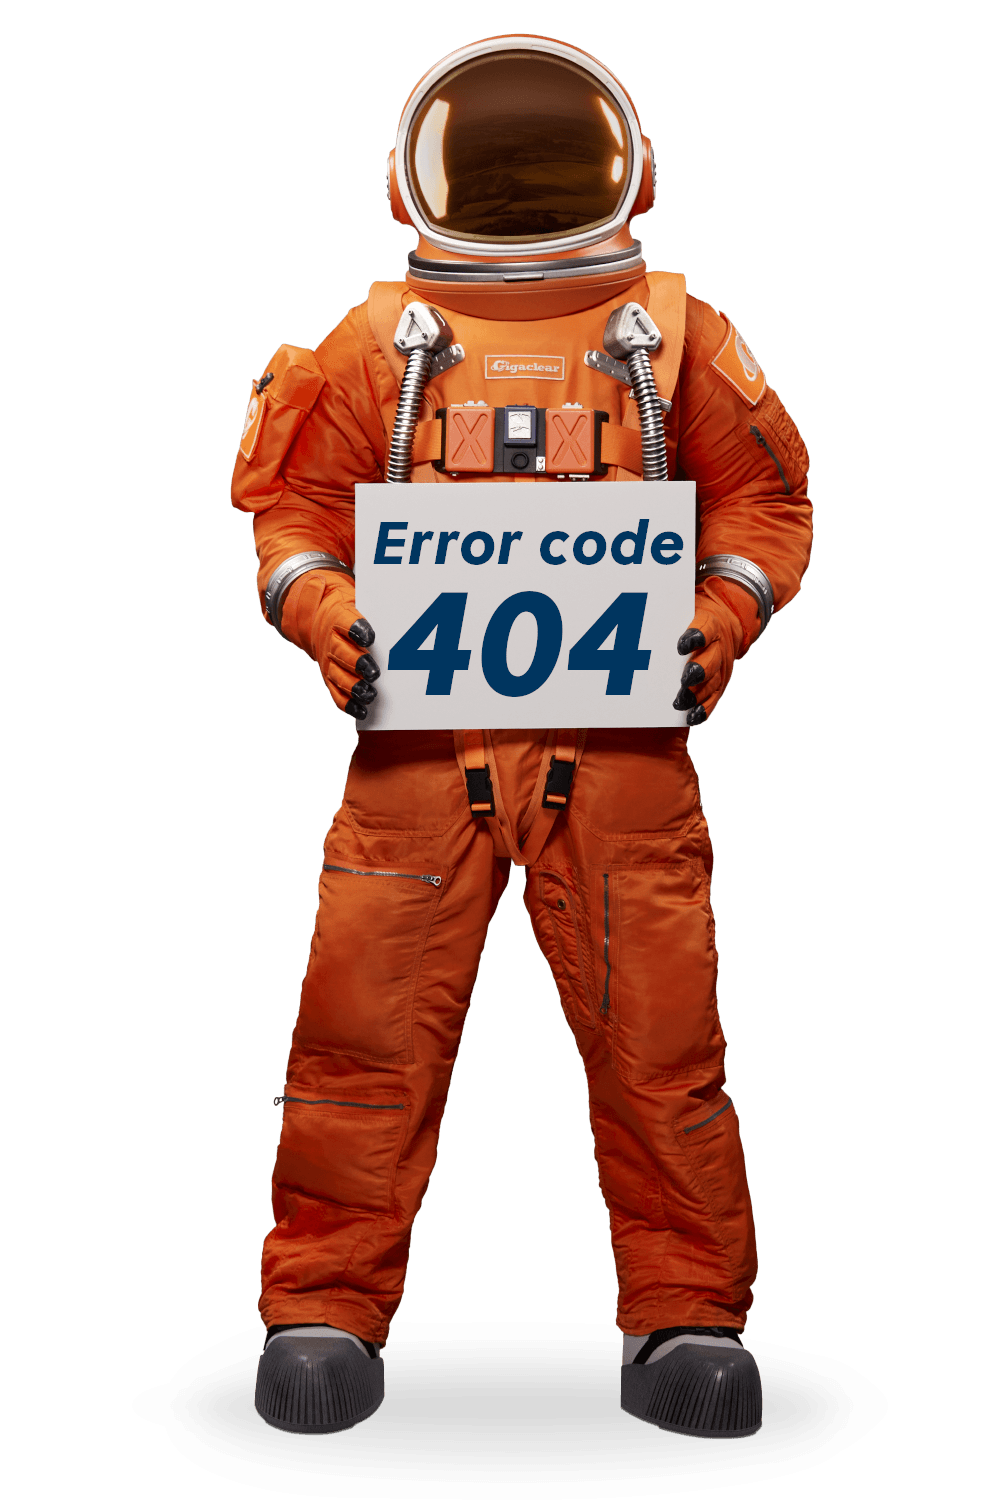 austronaut showing 404 error code